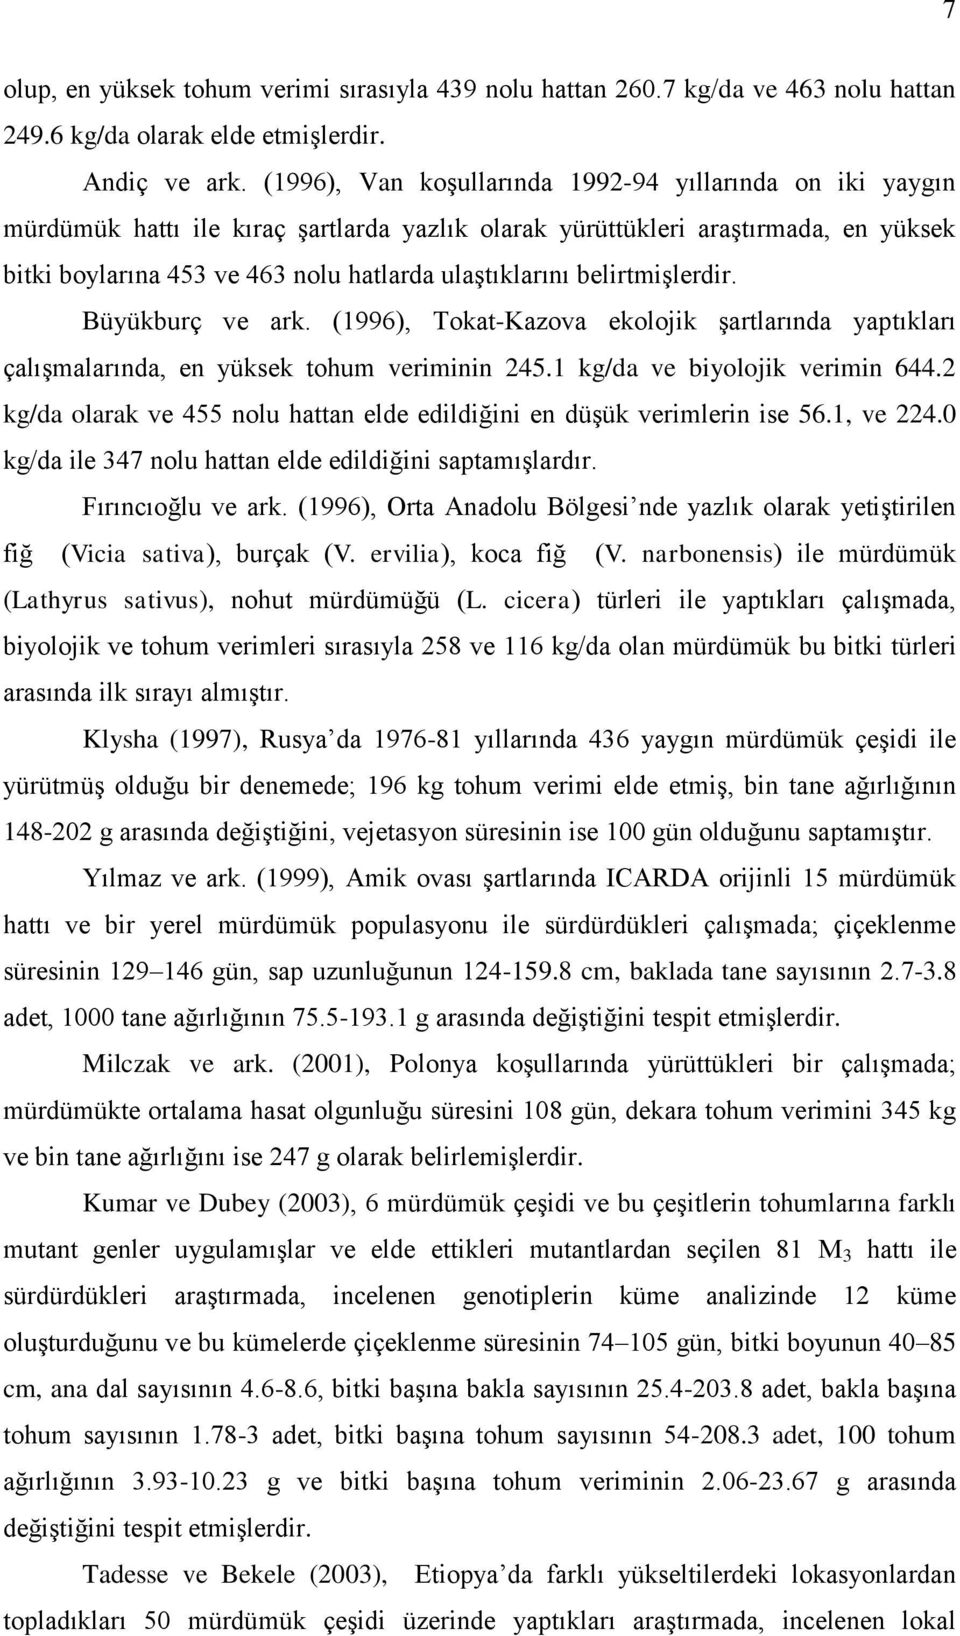 belirtmişlerdir. Büyükburç ve ark. (1996), Tokat-Kazova ekolojik şartlarında yaptıkları çalışmalarında, en yüksek tohum veriminin 245.1 kg/da ve biyolojik verimin 644.